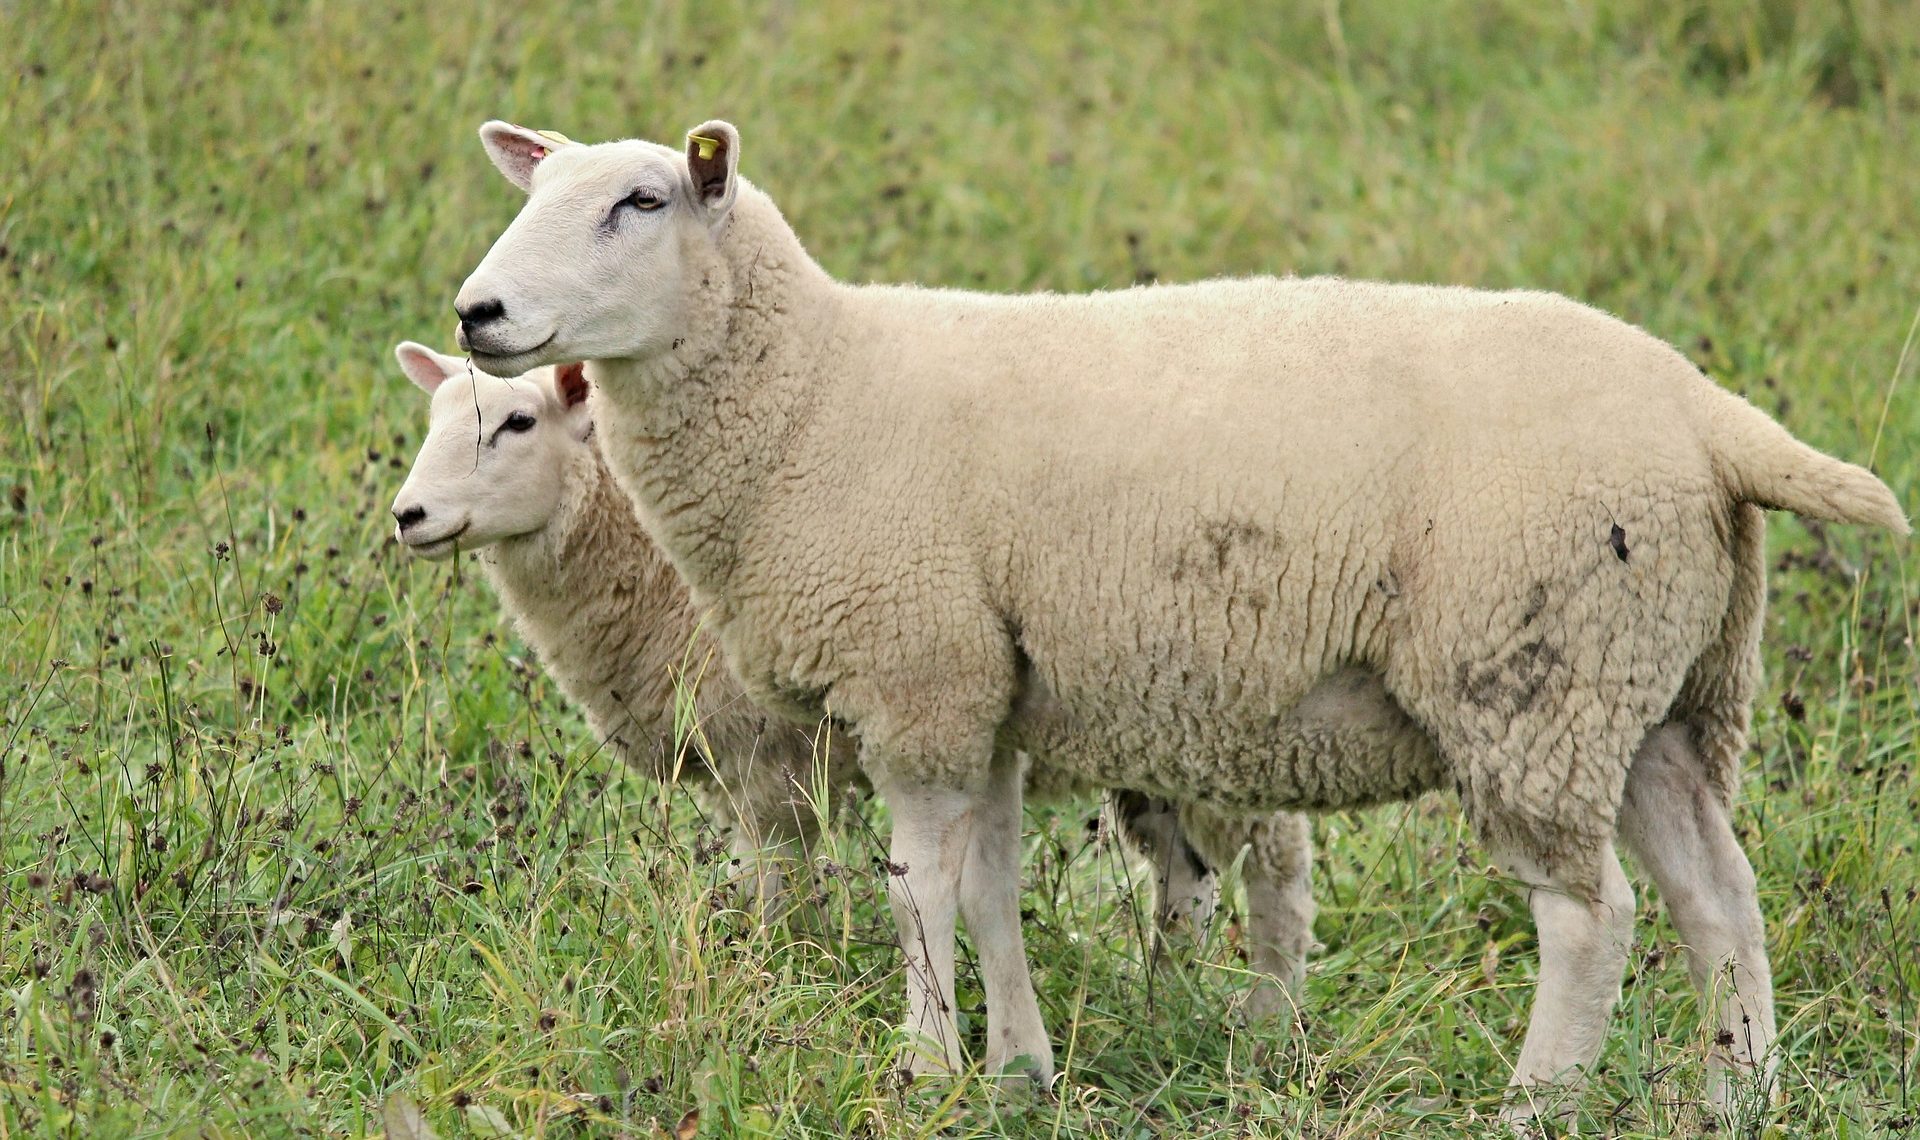 Montants des aides ovines et de l’aide caprine pour la campagne 2021